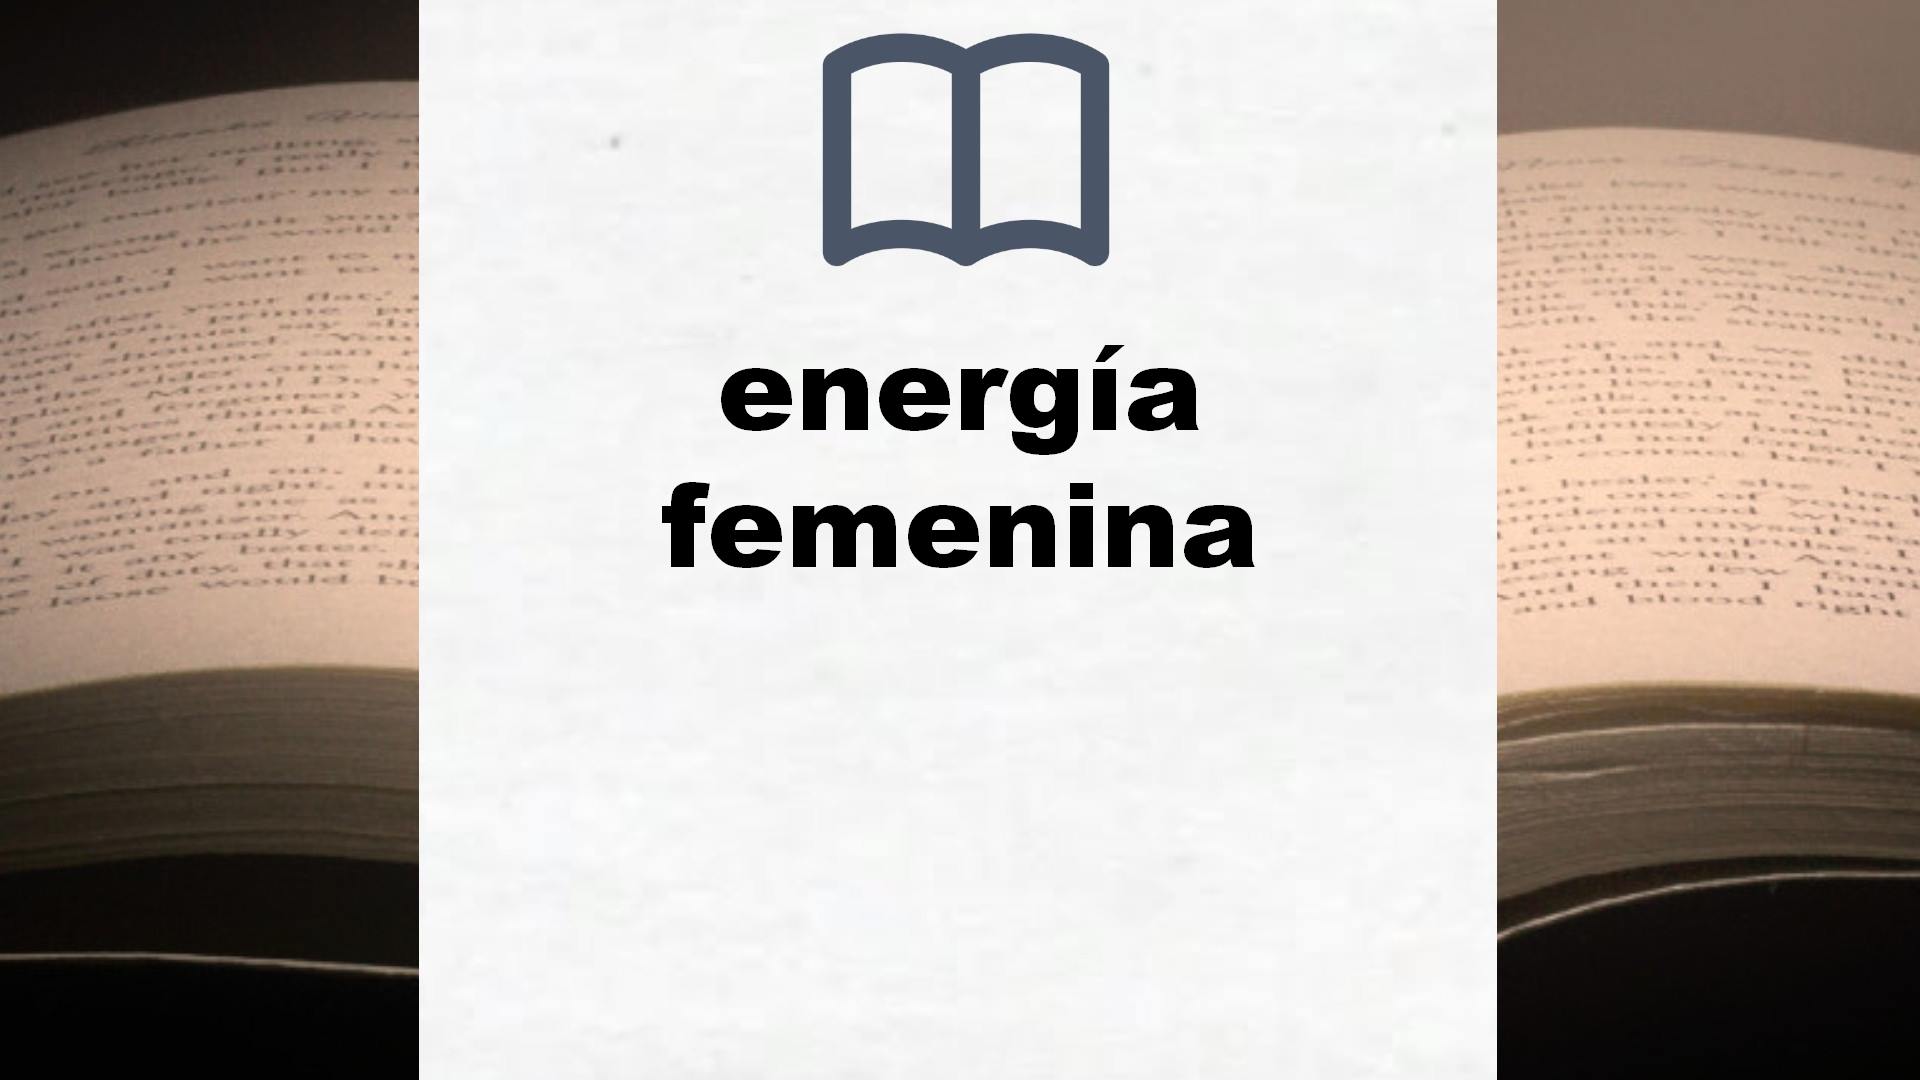 Libros sobre energía femenina